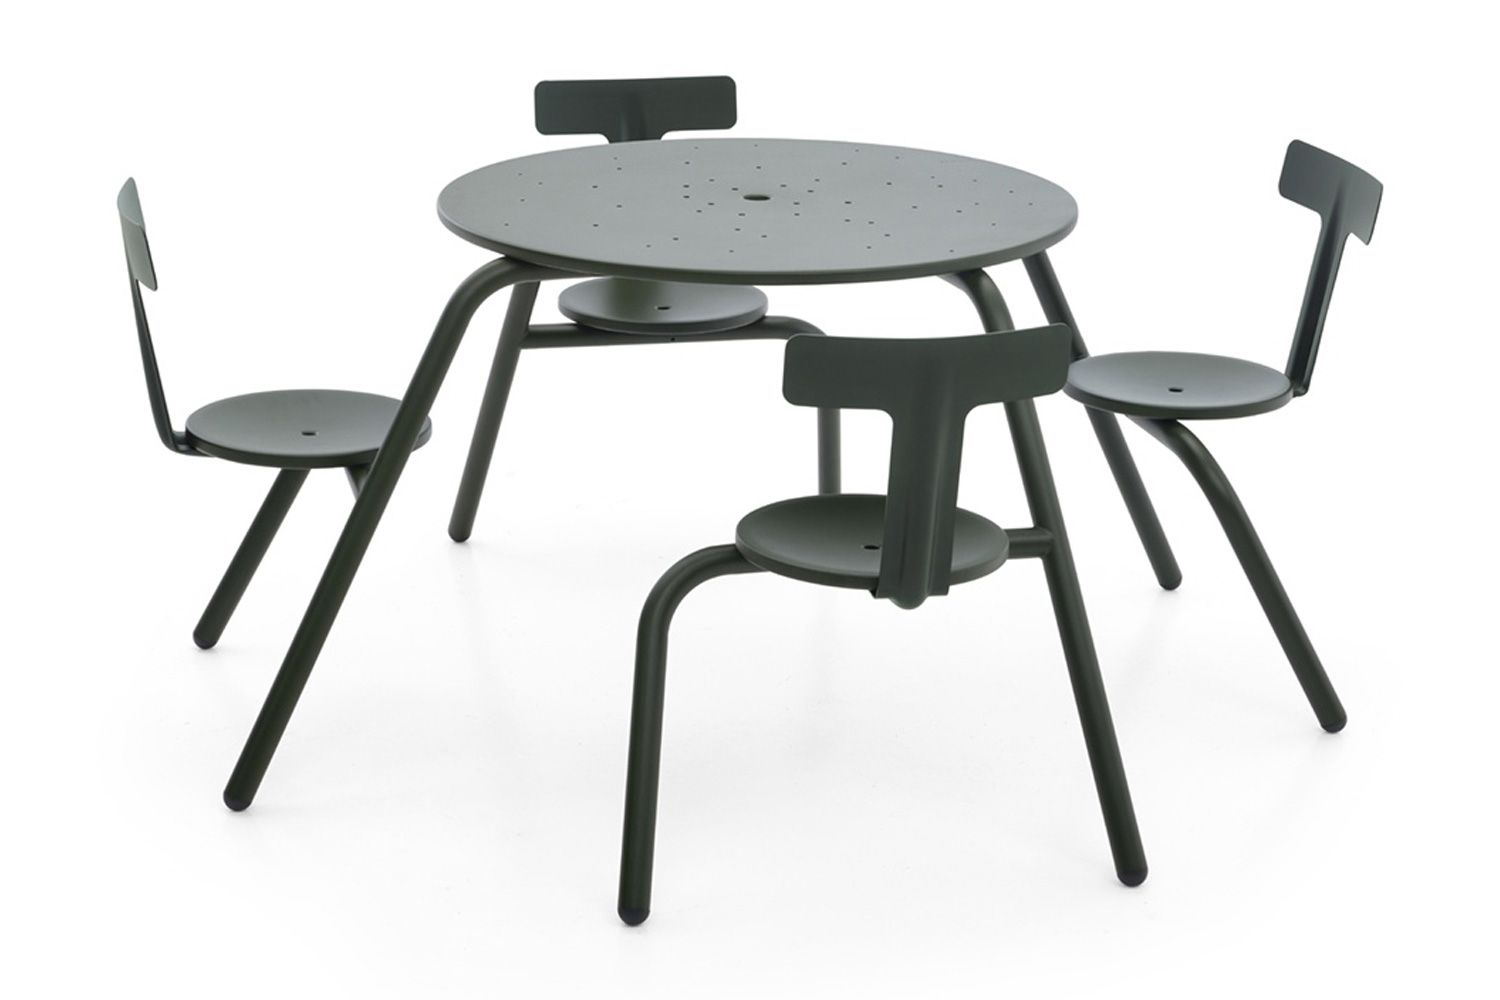 3〜5人掛けのコンパクトなピクニックテーブル。天板は、水抜き穴＆パラソルホール有りタイプと、フラットの2タイプがある。背もたれもつけることが可能